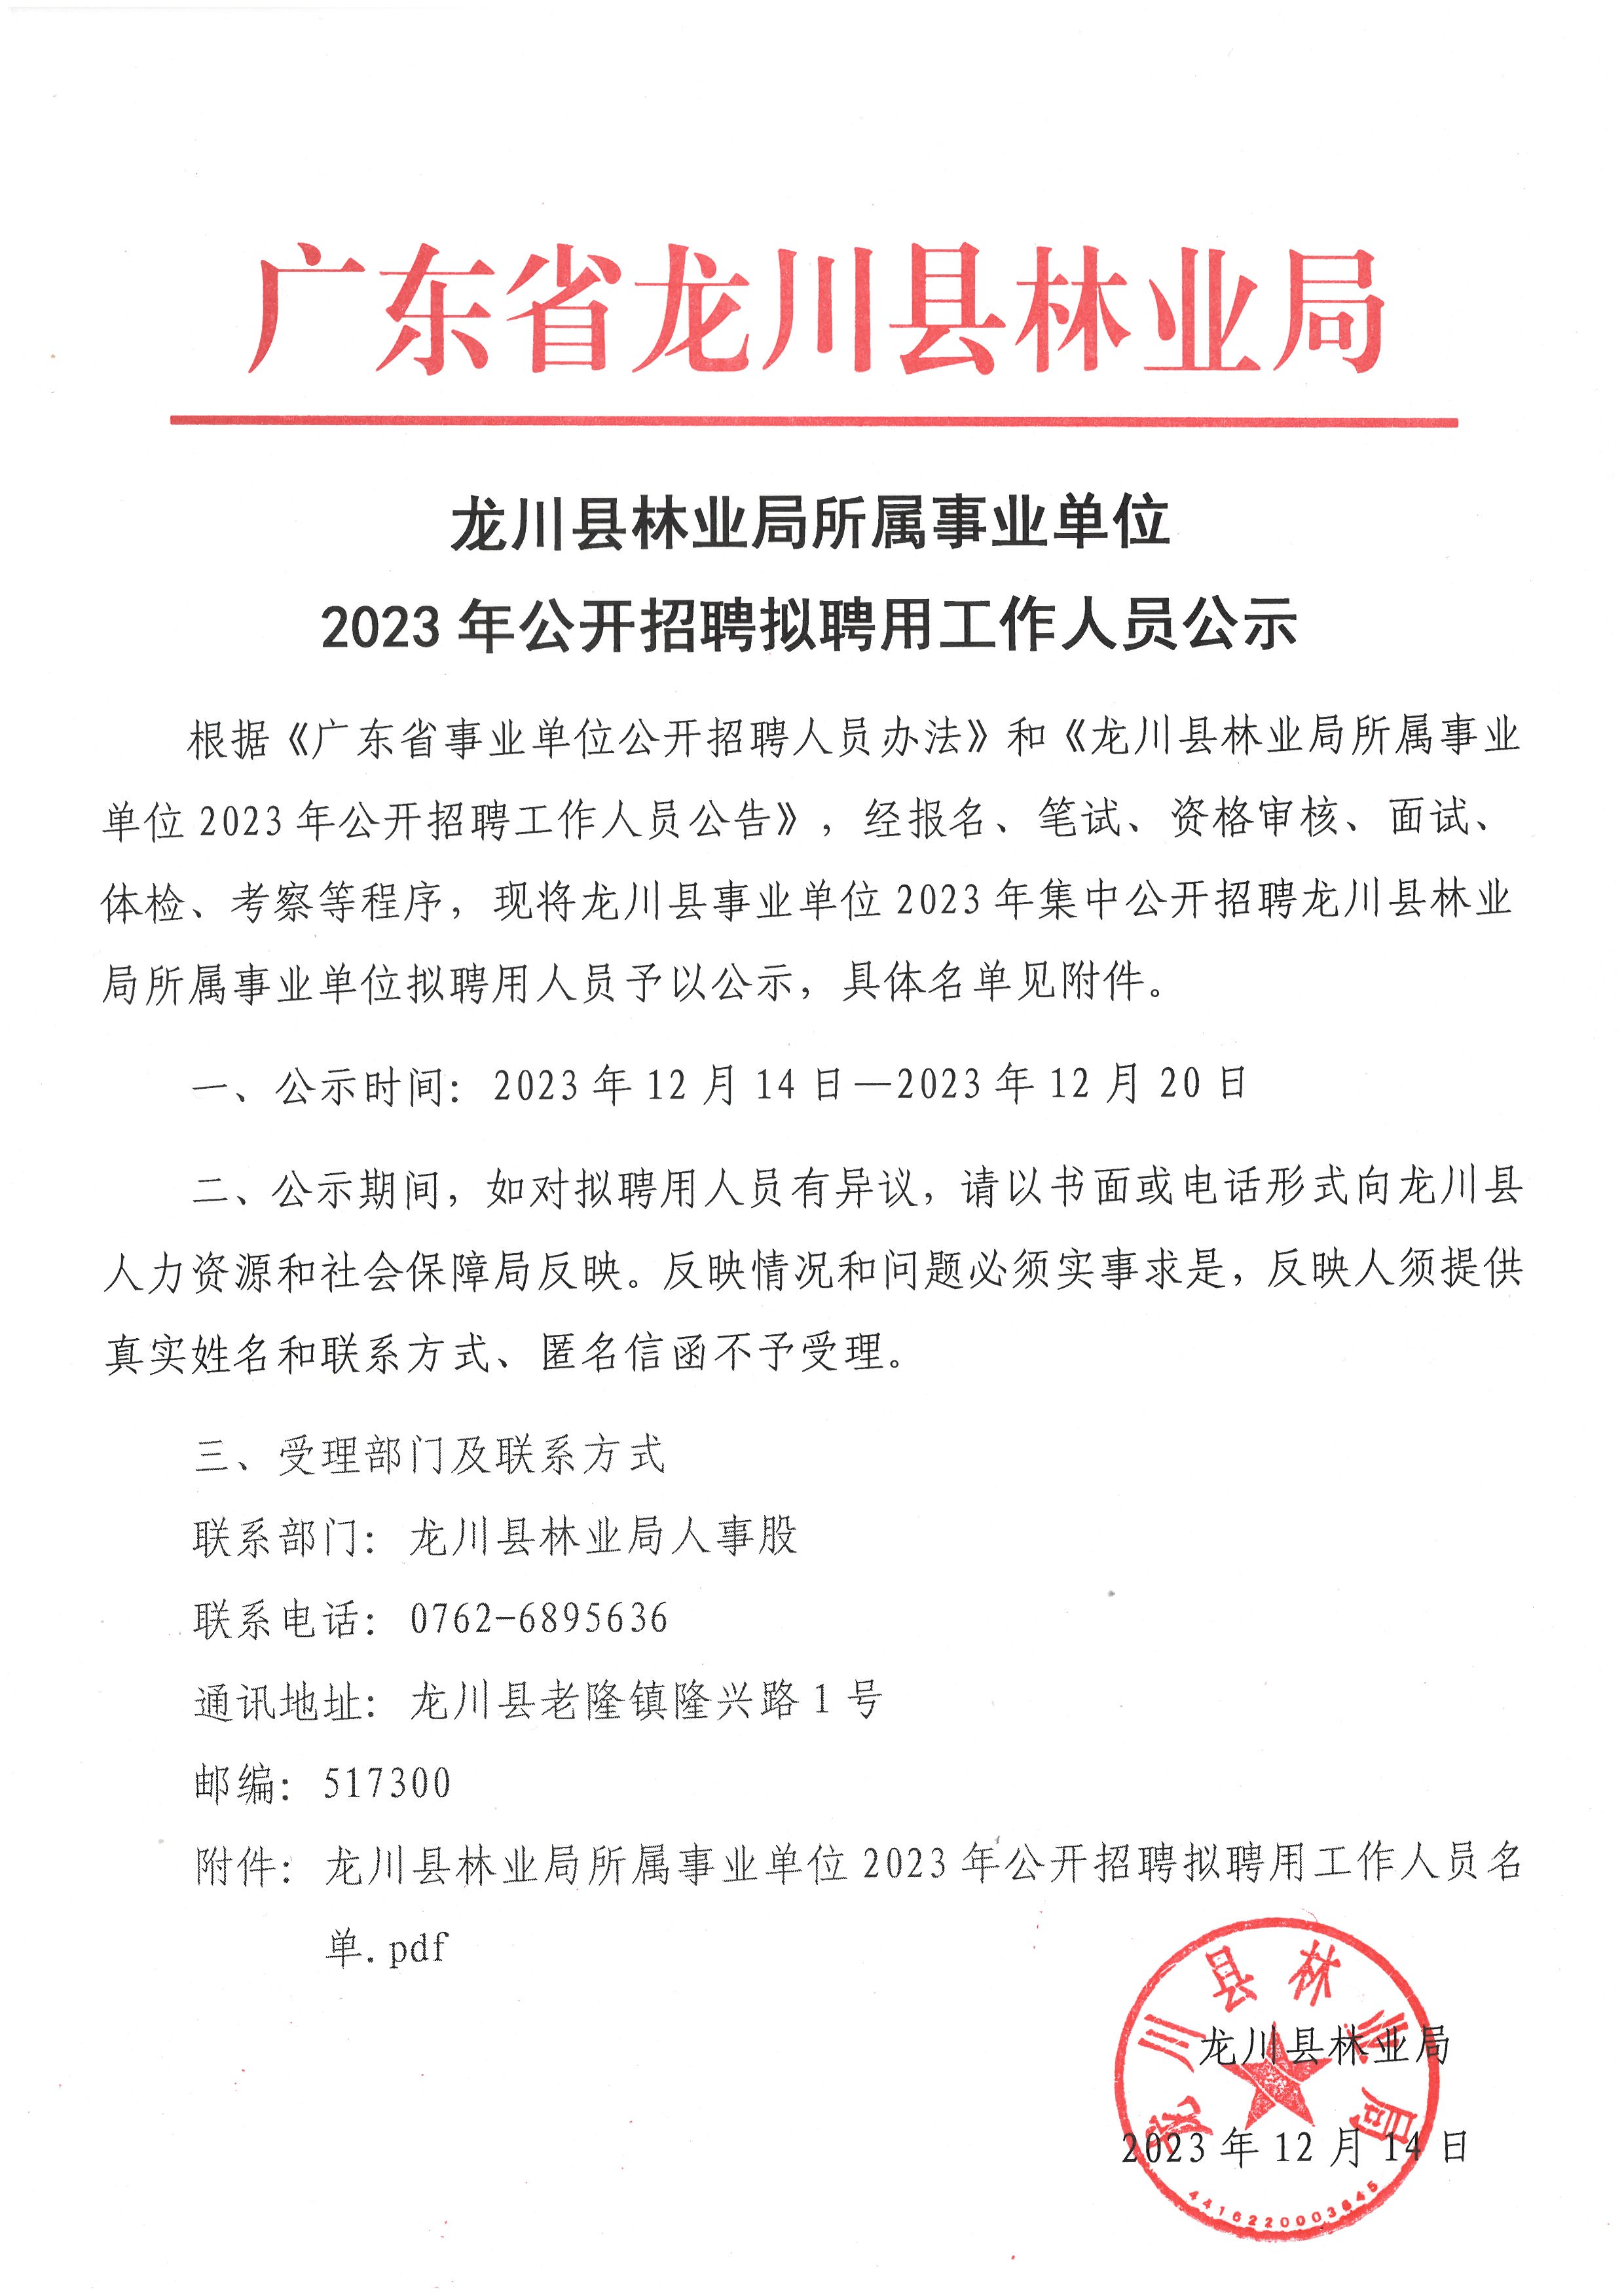 龙川县林业局所属事业单位2023年公开招聘拟聘用工作人员公示.jpg